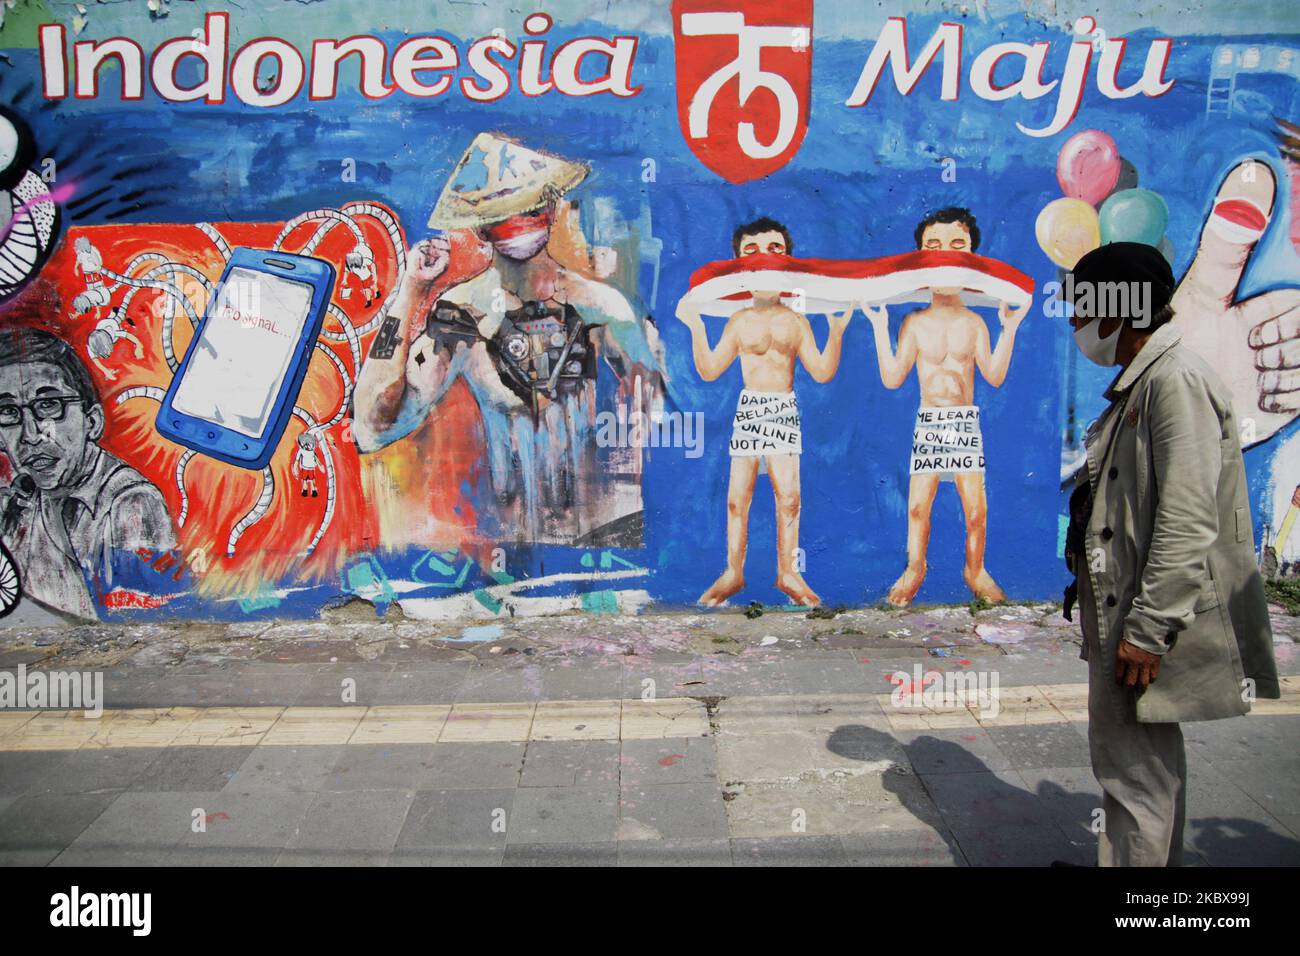 Bambang si trova di fronte al murale a tema dell'Indipendenza dipinto da lui e dagli amici sulla parete della strada accanto al suo studio di pittura di strada durante la celebrazione del 75th° giorno dell'Indipendenza dell'Indonesia a Giacarta, Indonesia, il 17 agosto 2020. Bambang Tridoyo (63), artista di pittura di strada. Ha iniziato la sua carriera dal 1975. In qualità di ammiratore del Padre fondatore dell'Indonesia, Sukarno, molte delle opere di Bambang sono ispirate da storie e figure eroiche. Non solo vendendo i suoi dipinti, accetta anche i servizi di pittura ritratto per i suoi clienti. La pandemia di Covid-19 che ha colpito l'Indonesia dalla fine di febbraio Foto Stock